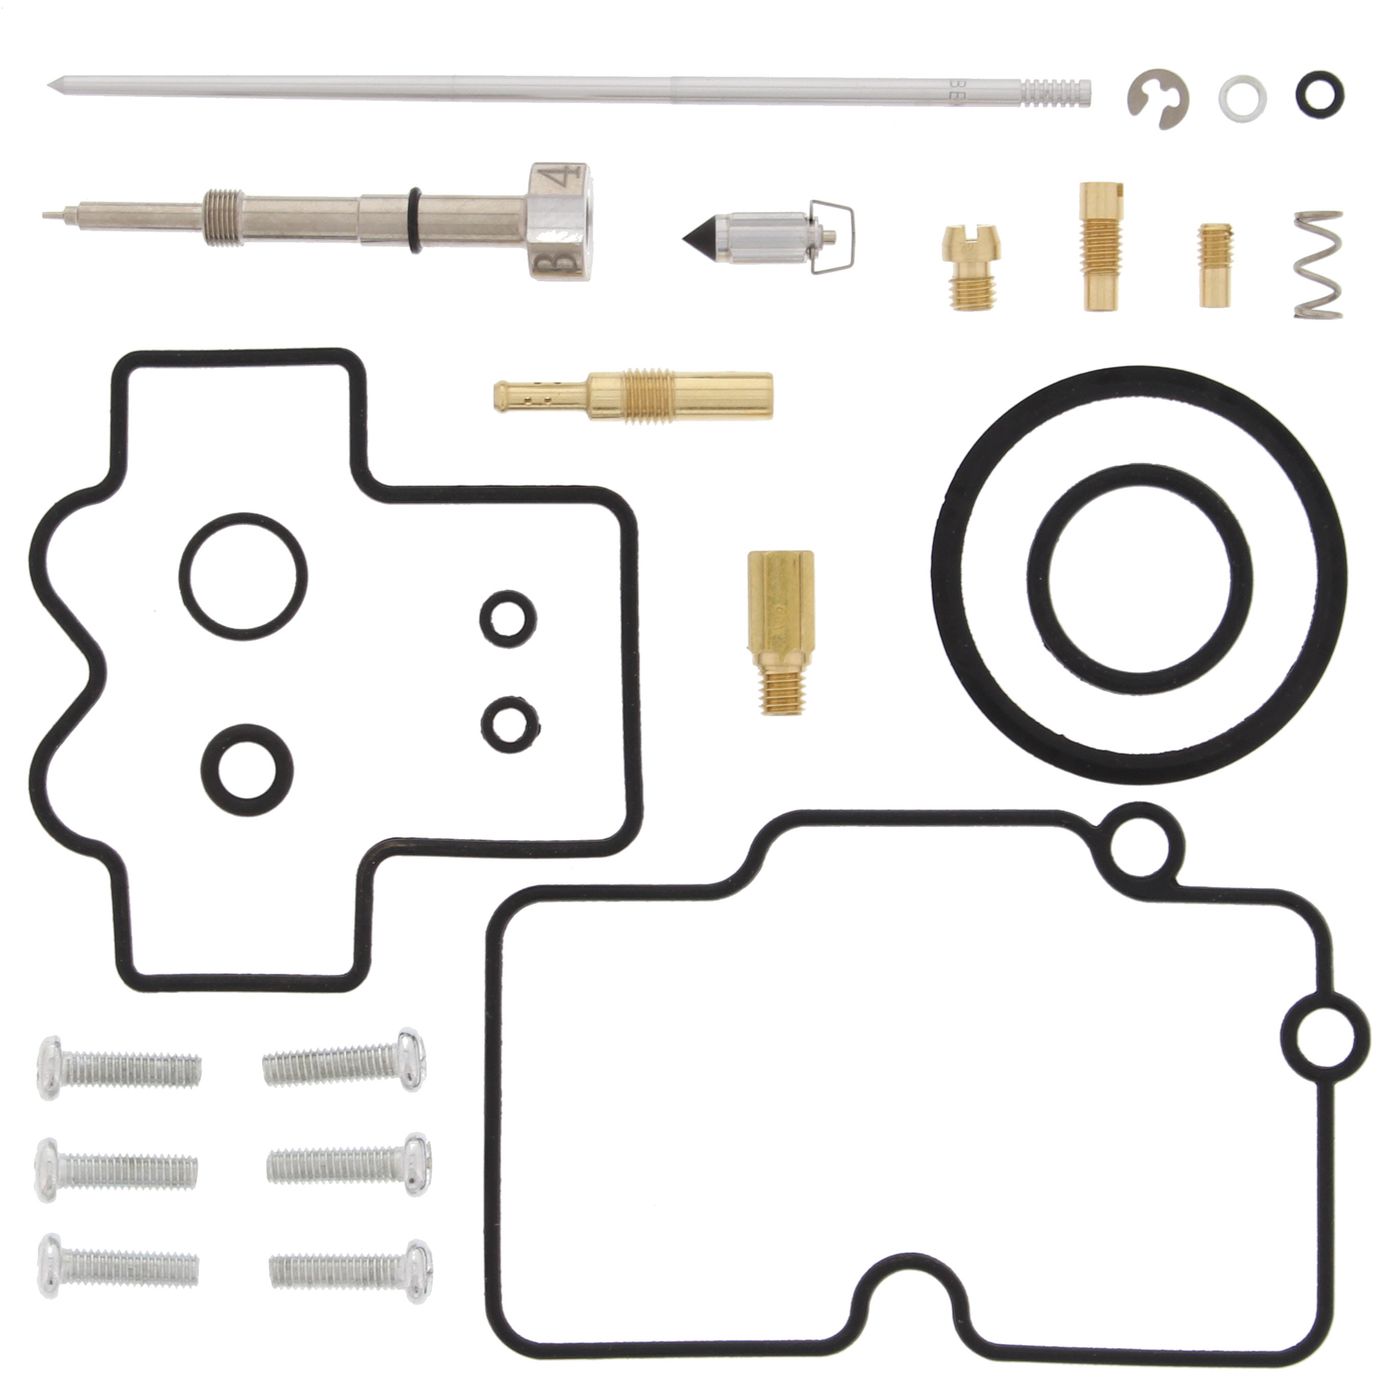 Wrp Carb Repair Kits - WRP261282 image